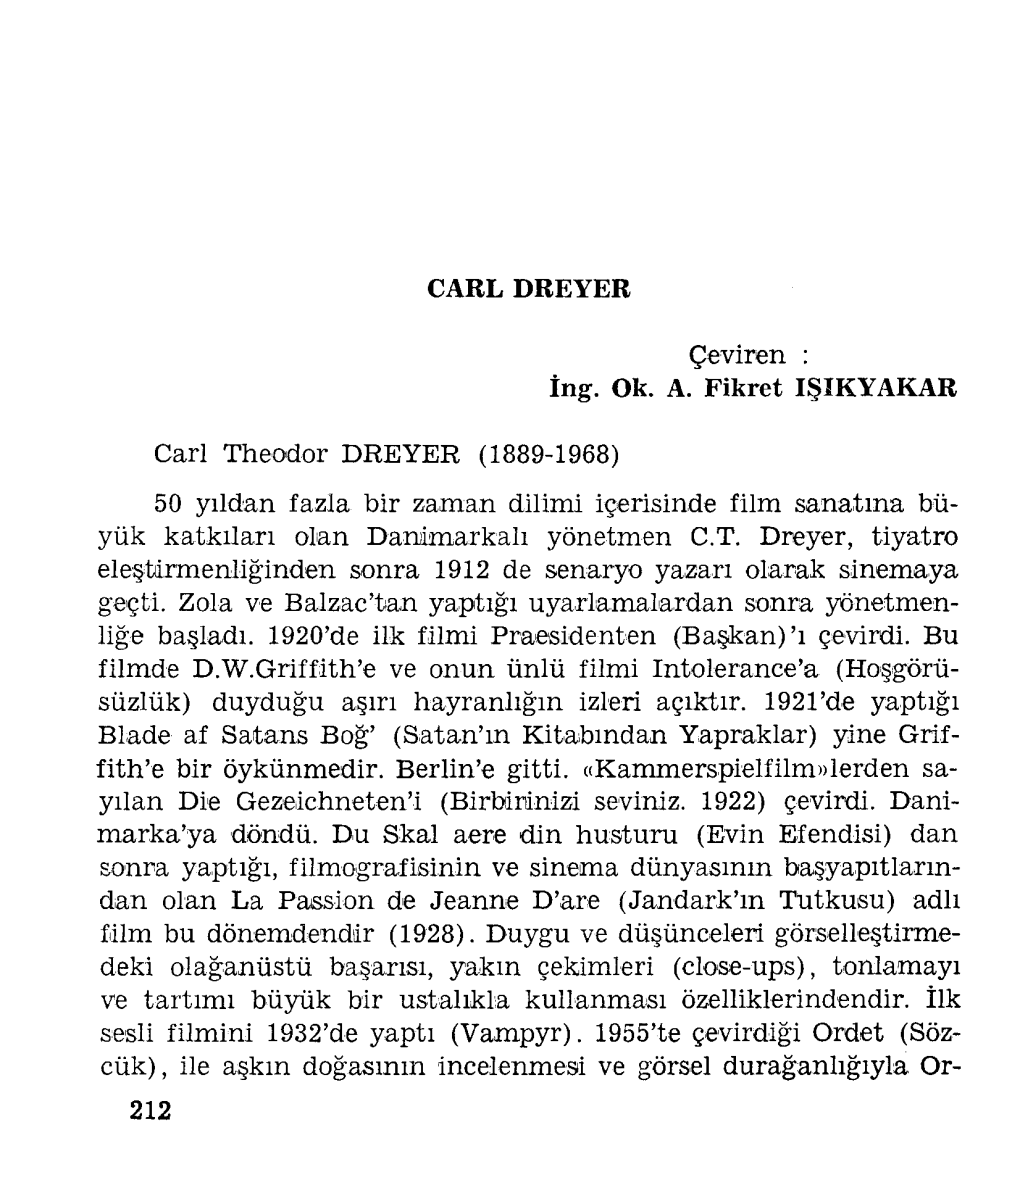 Carl Theodor DREYER (1889-1968)